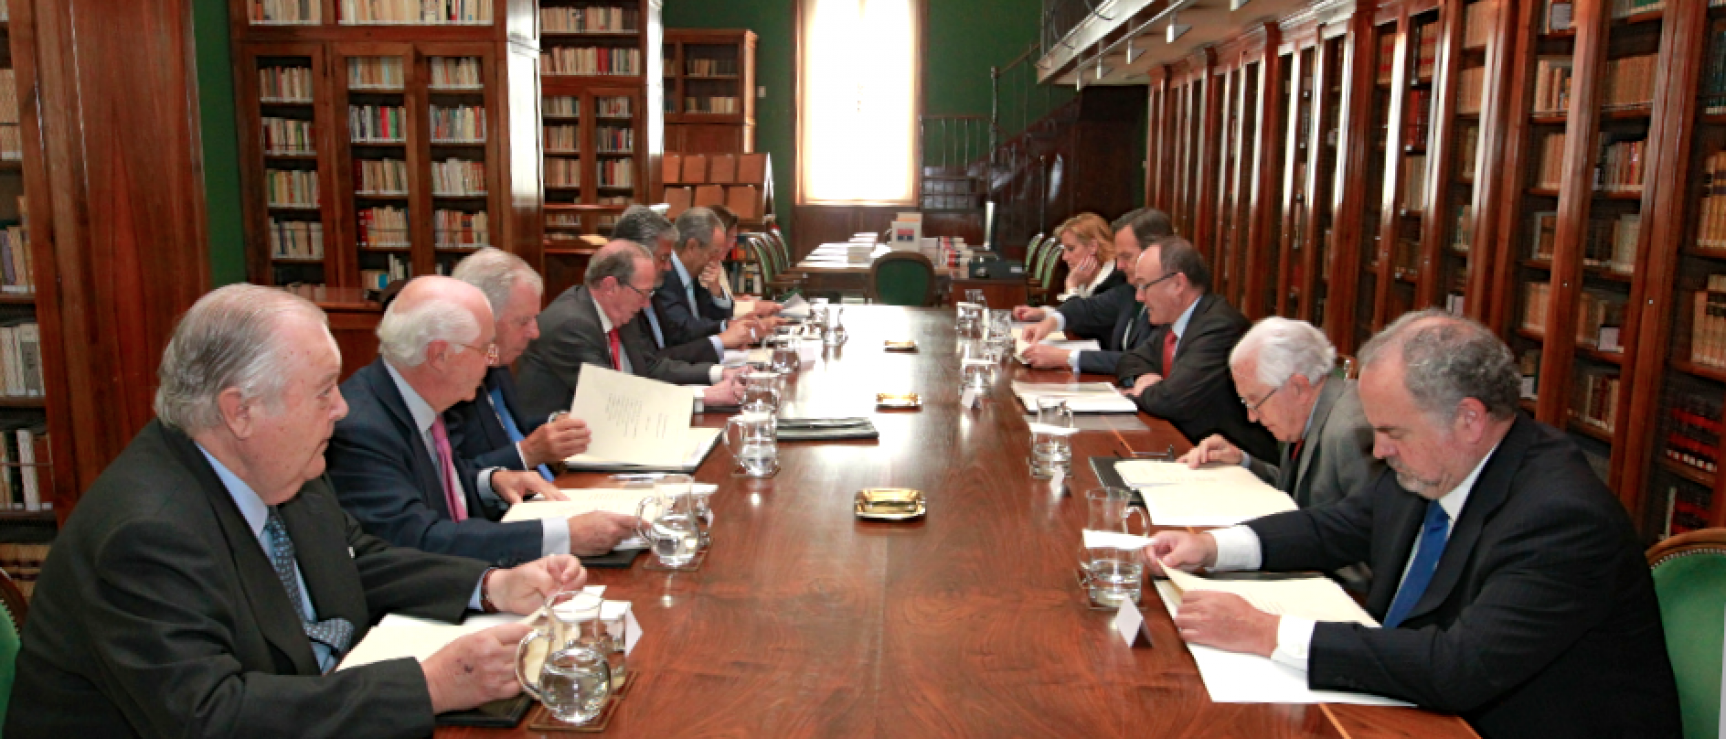 Reunión anual del patronato de la Fundación pro Real Academia Española, 2013.